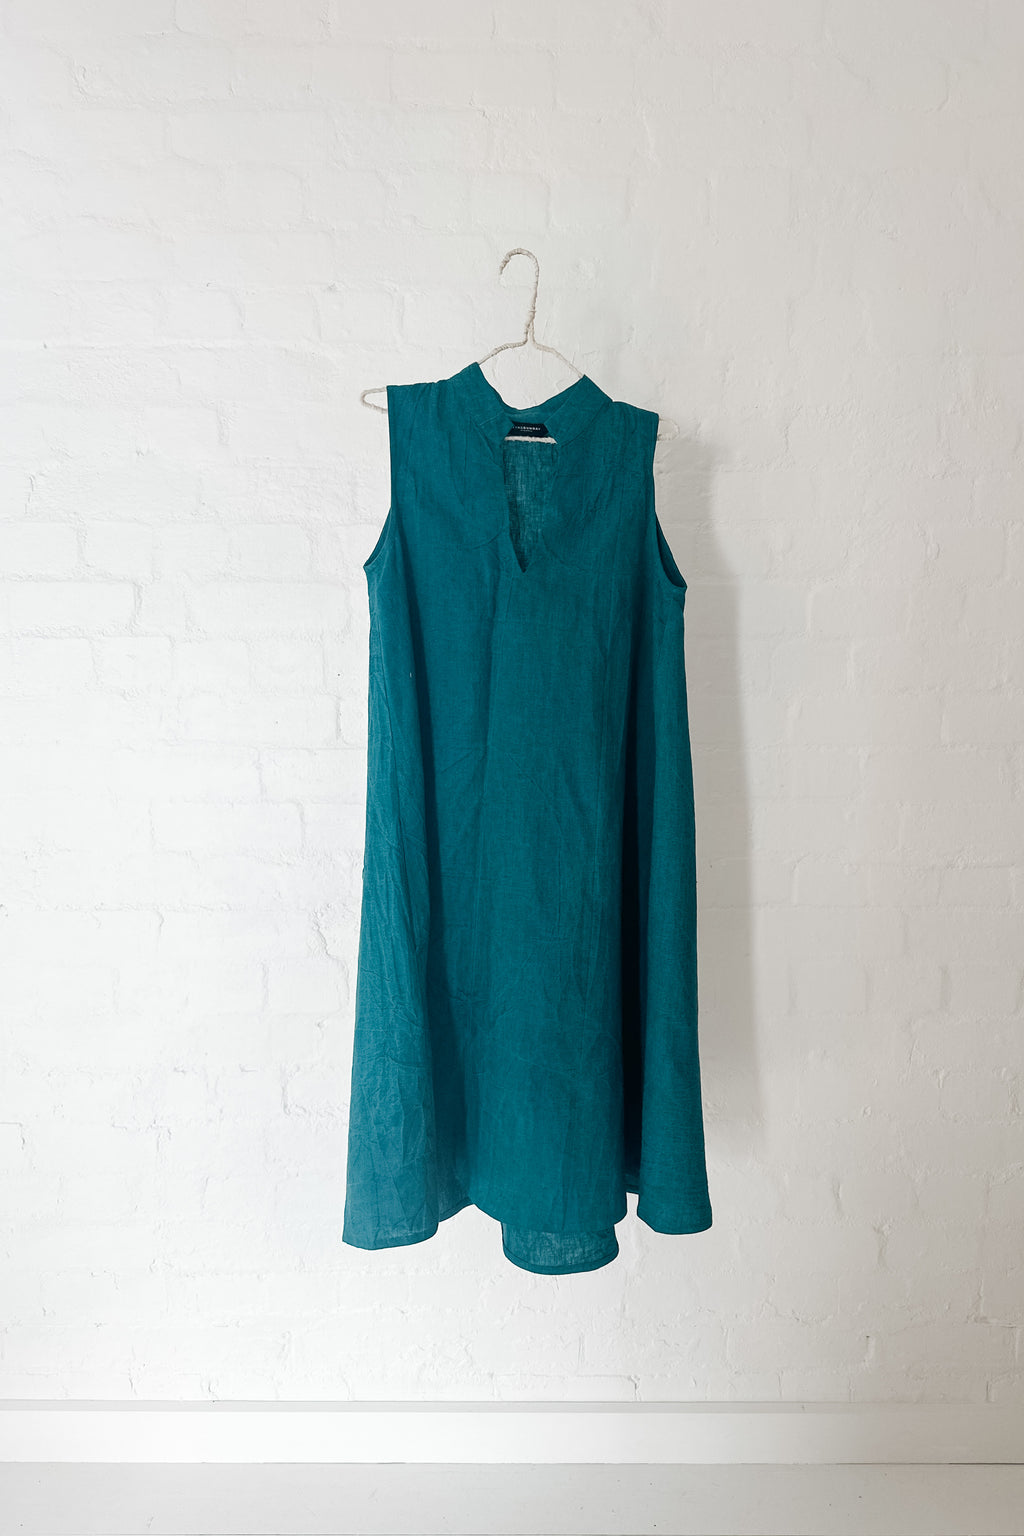 GW | Fern Dress| Antique Green | XS